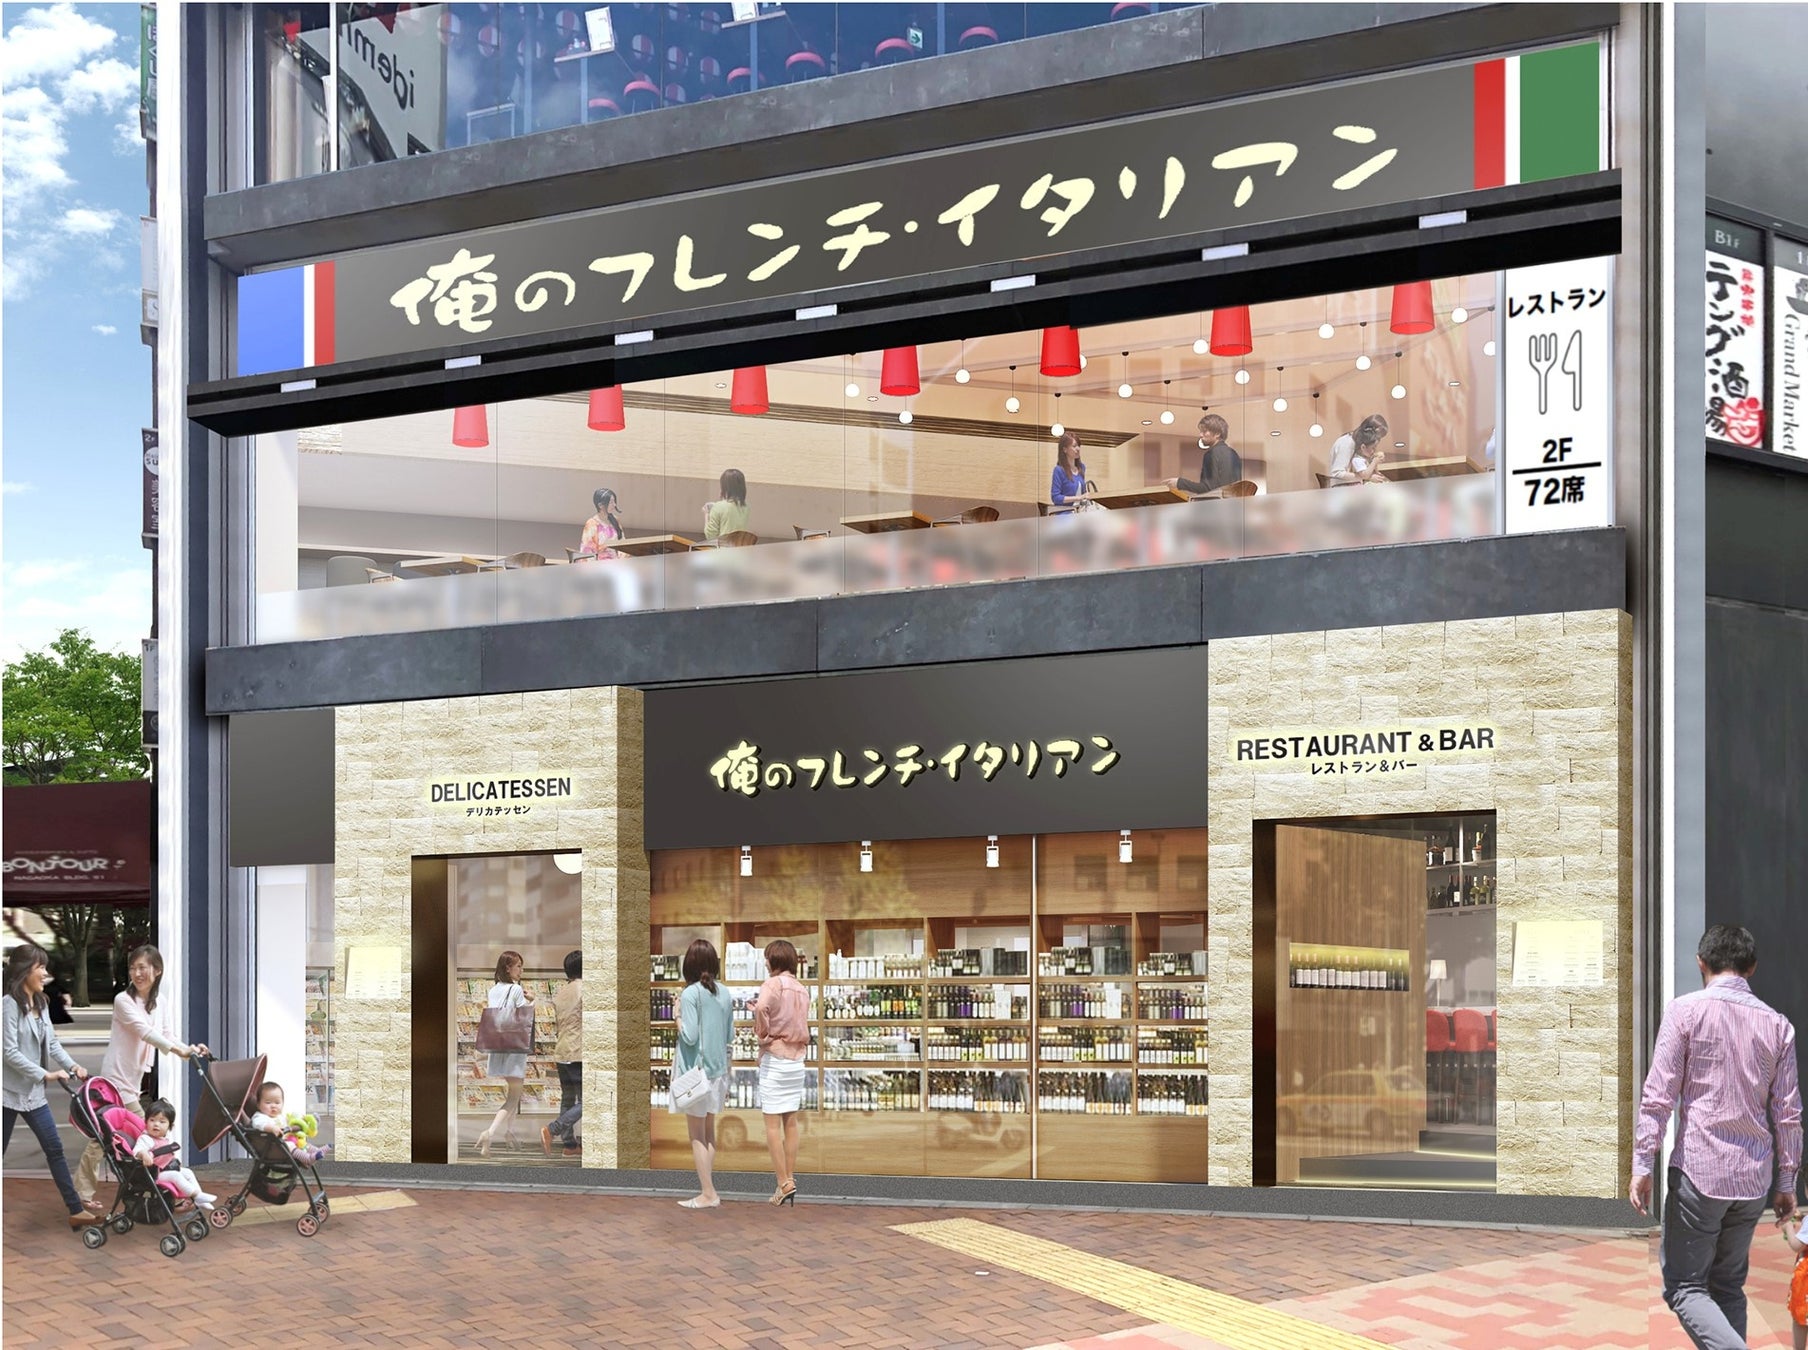 メディア取材が続く京都発クラフトフライドチキン専門店が、9月限定「麻婆なすバーガー」を発売。しびれと辛さがガツンと効いた新作バーガー